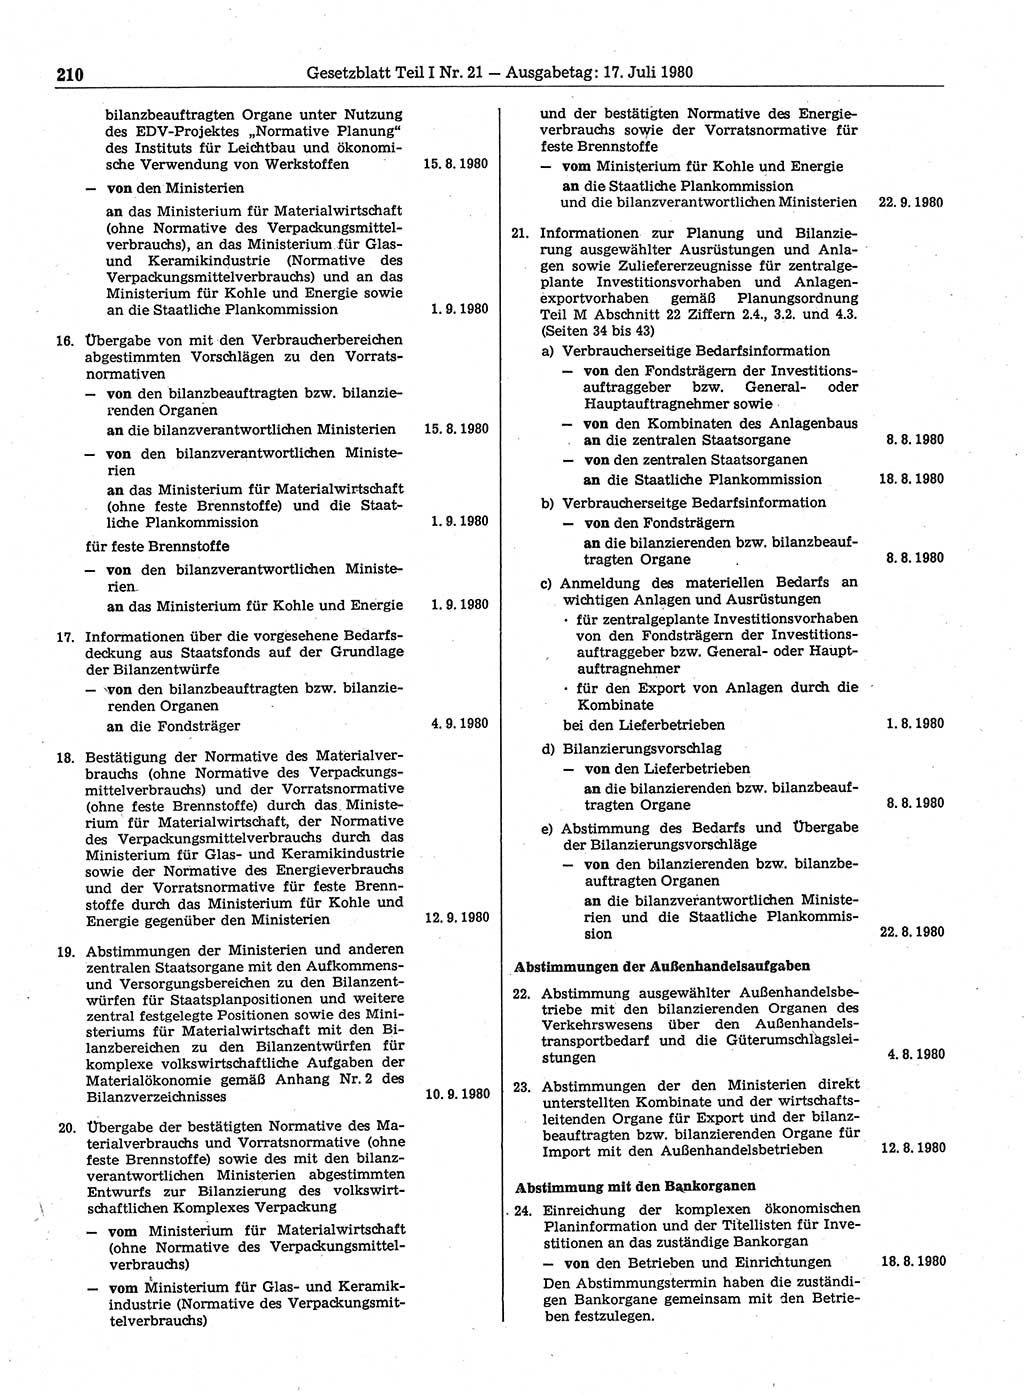 Gesetzblatt (GBl.) der Deutschen Demokratischen Republik (DDR) Teil Ⅰ 1980, Seite 210 (GBl. DDR Ⅰ 1980, S. 210)